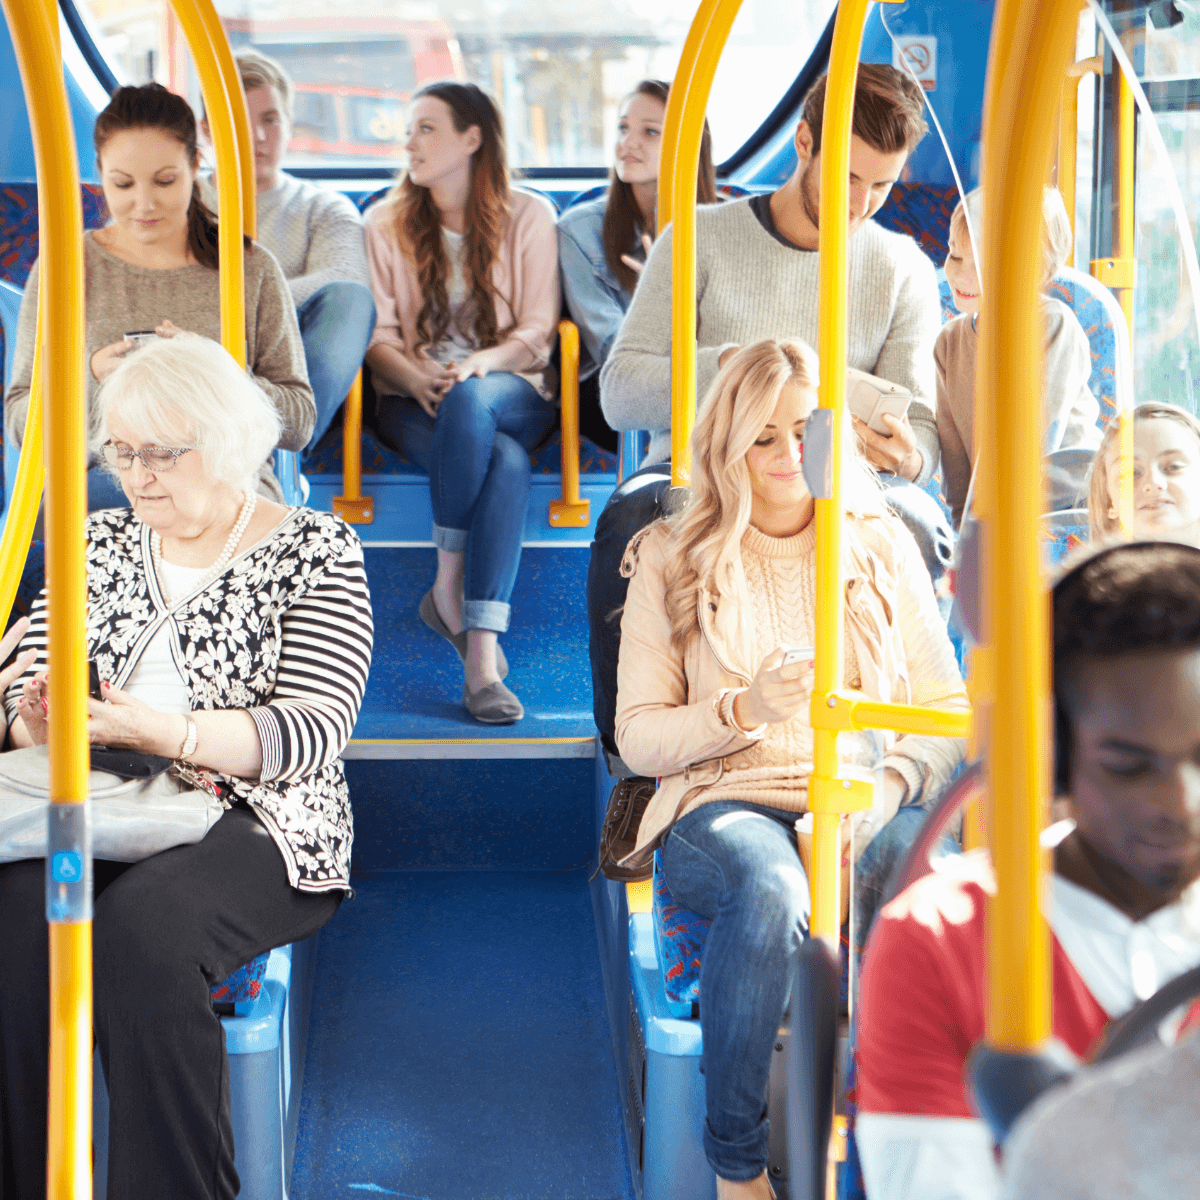 Public transport passengers